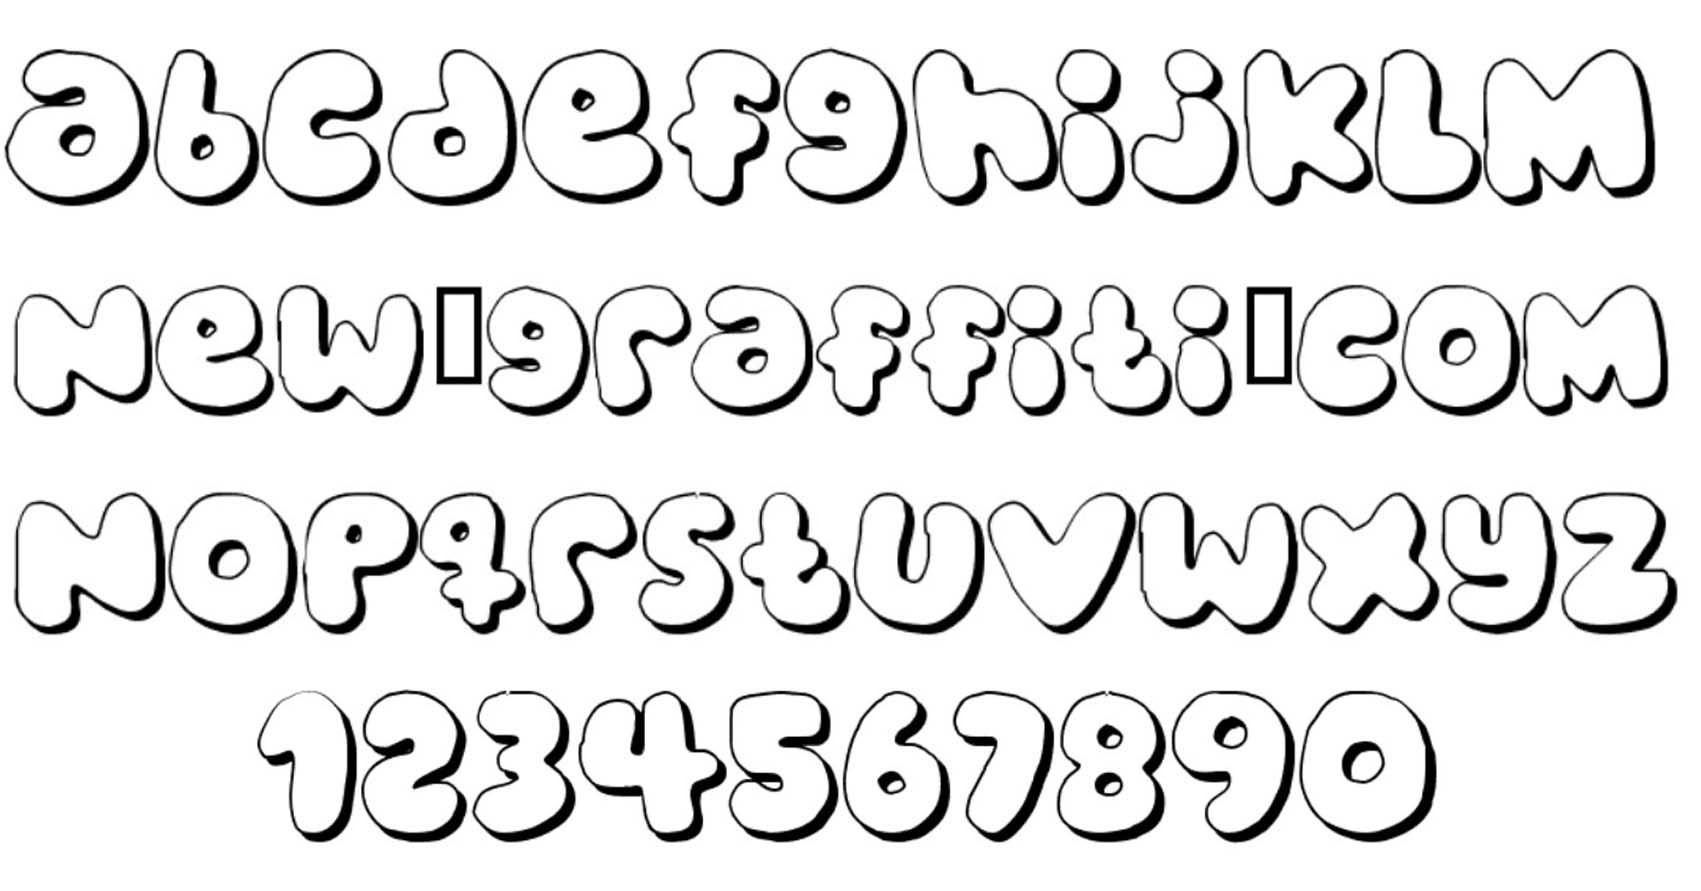 10-cool-bubble-fonts-images-bubble-letters-alphabet-font-cool-bubble